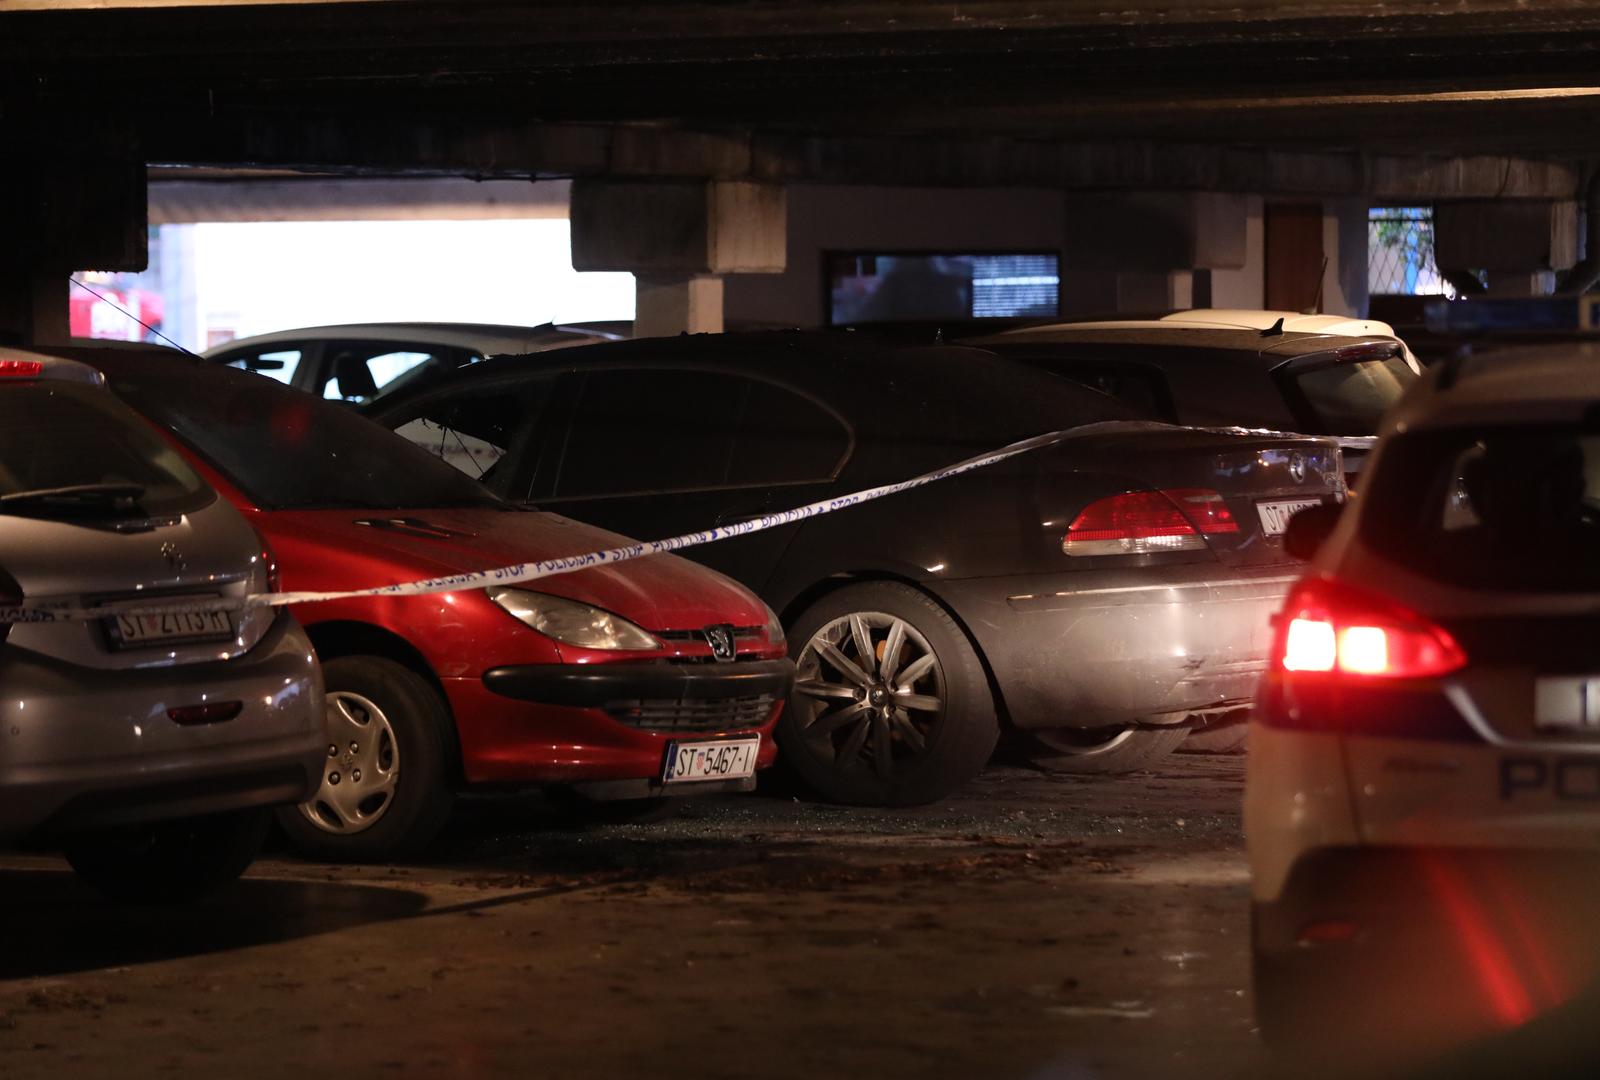 29.12.2021., Split - Tijekom noci ponovo su gorjela vozila u garazi na Pujankama. Policija osigurva mjesto pozara do pocetka ocevida. Photo: Ivo Cagalj/PIXSELL